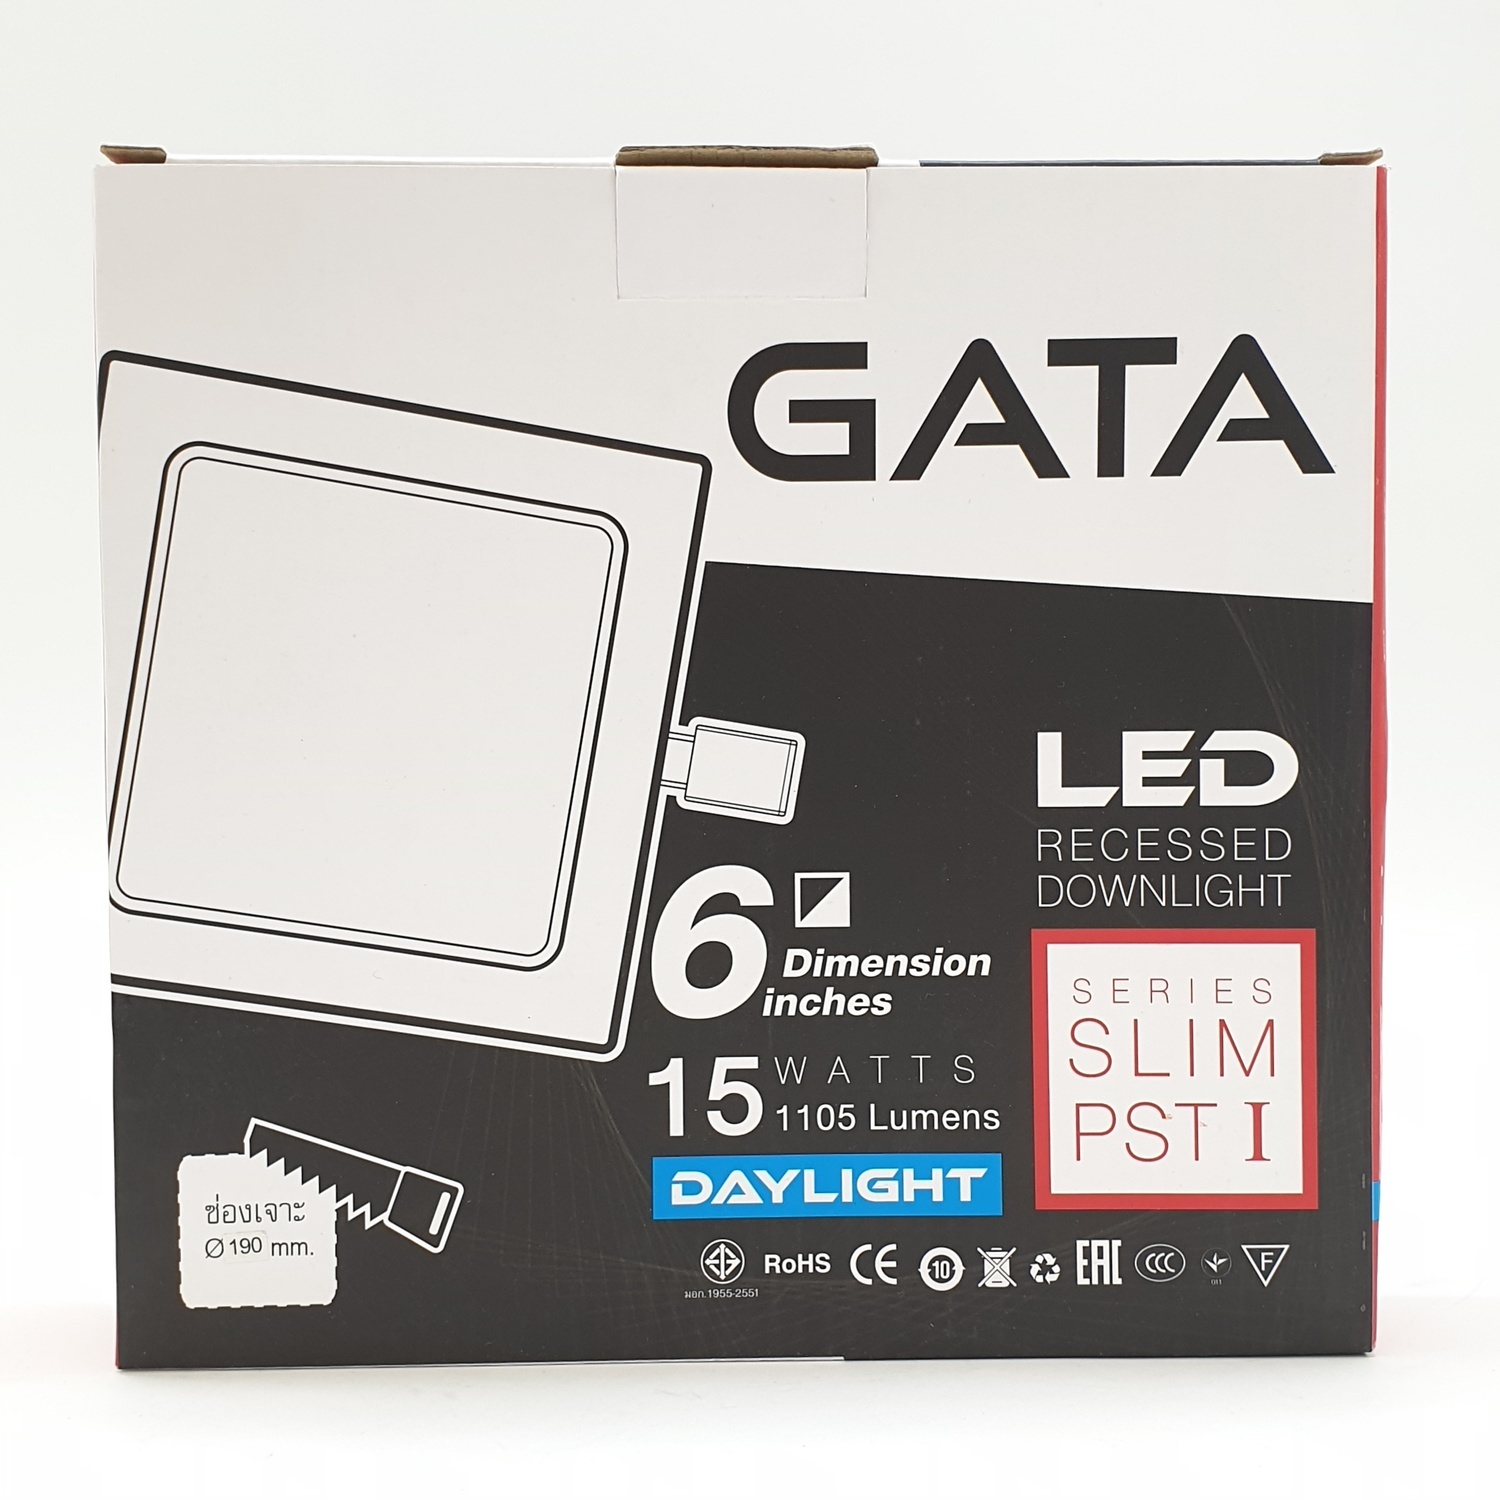 GATA โคมดาวไลท์ LED 6 นิ้ว 15W Day สี่เหลี่ยม (Slim) 